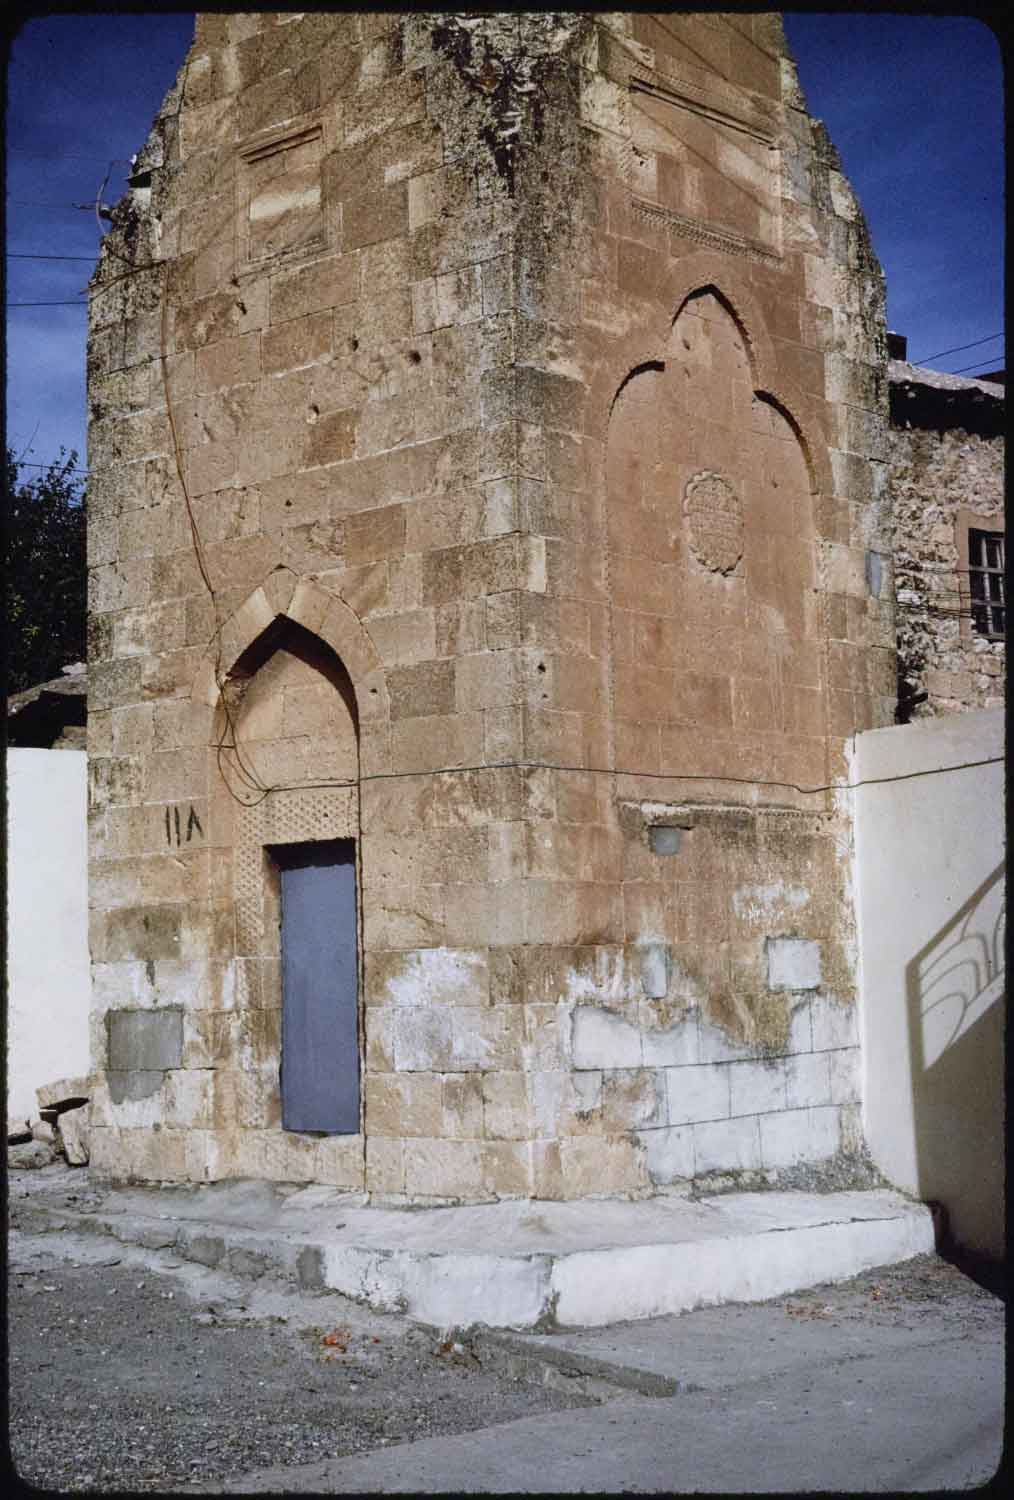 Minaret base with access door. 